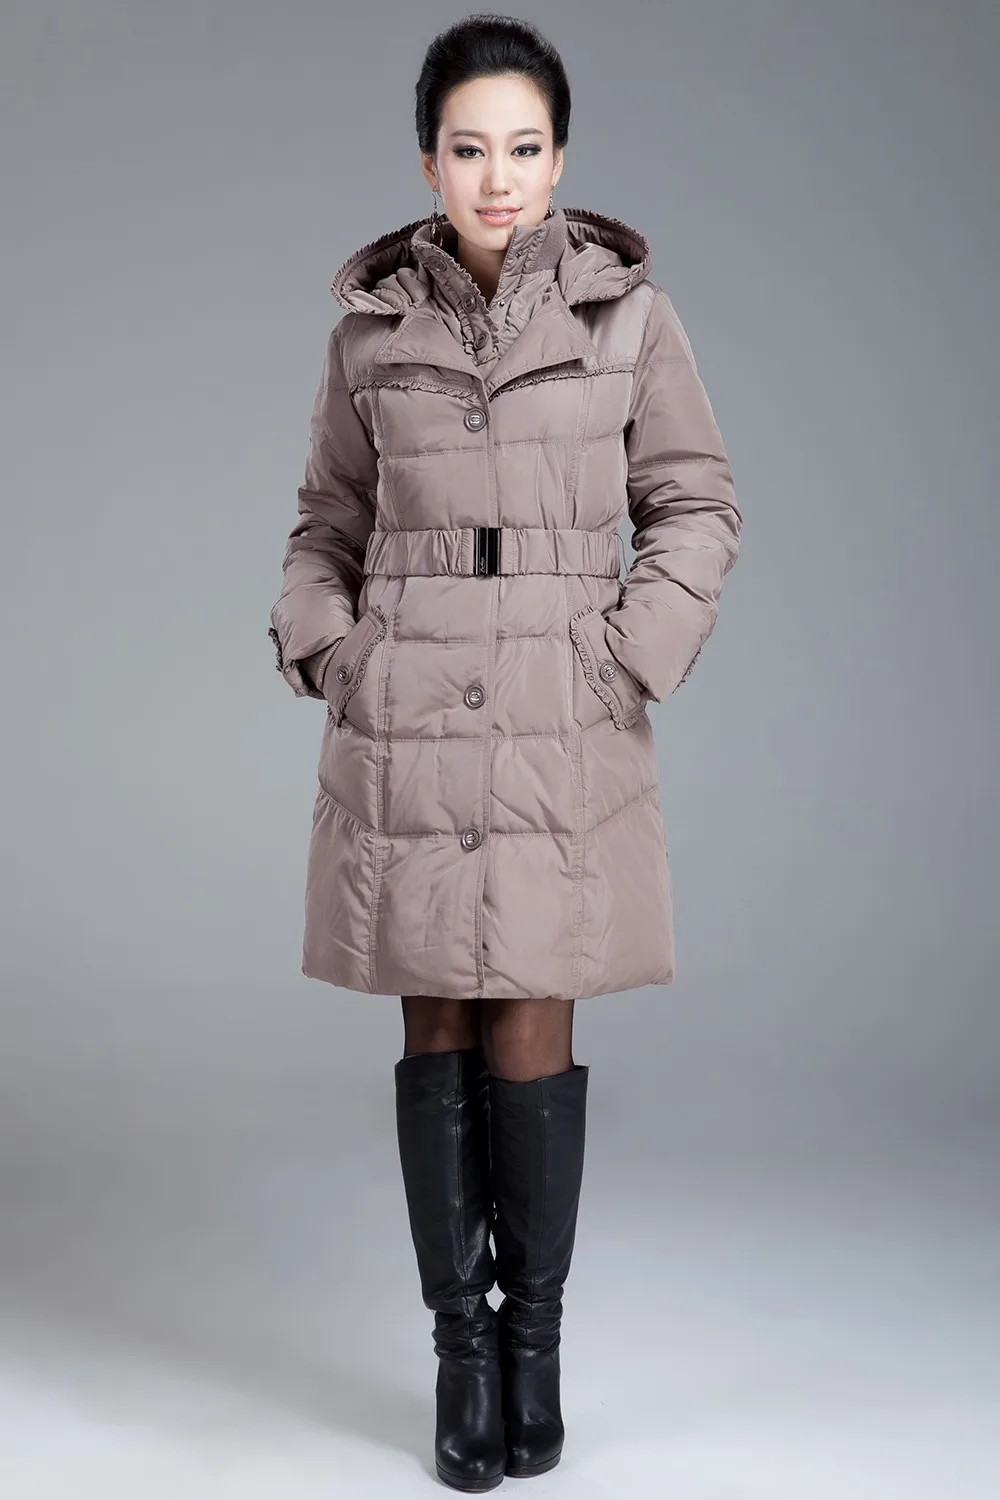 Зимняя куртка женская парка толстый теплый белый утиный пух куртки для женщин тонкий капюшон длинные пальто женщина плюс размер 4XL HJ465